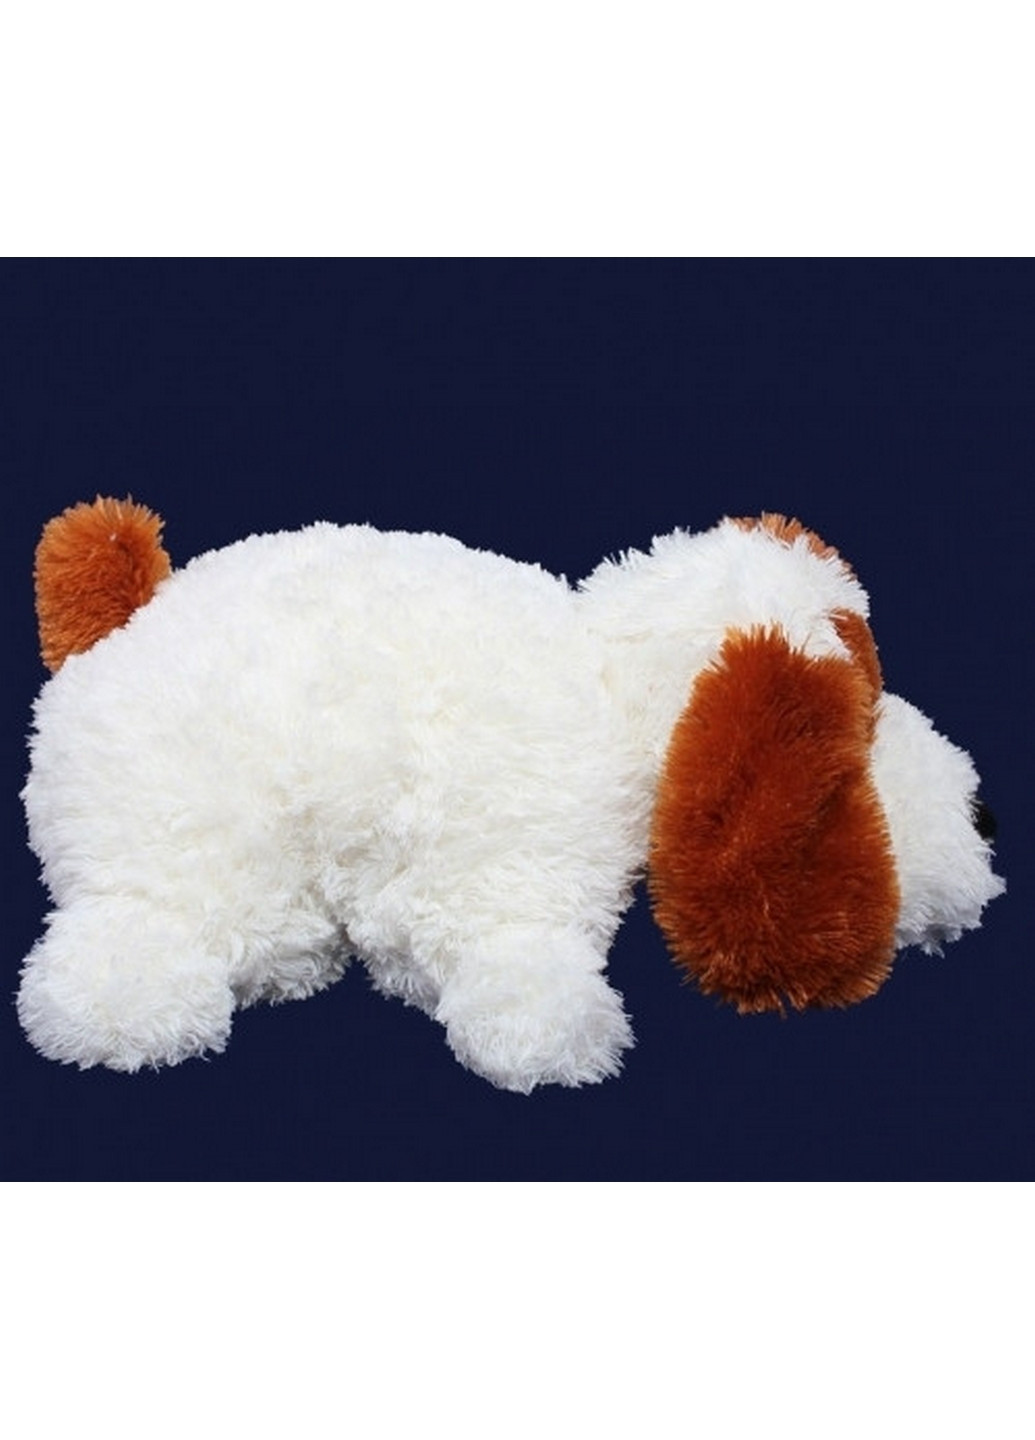 Мягкая подушка собака Шарик 55 см Алина (260532384)